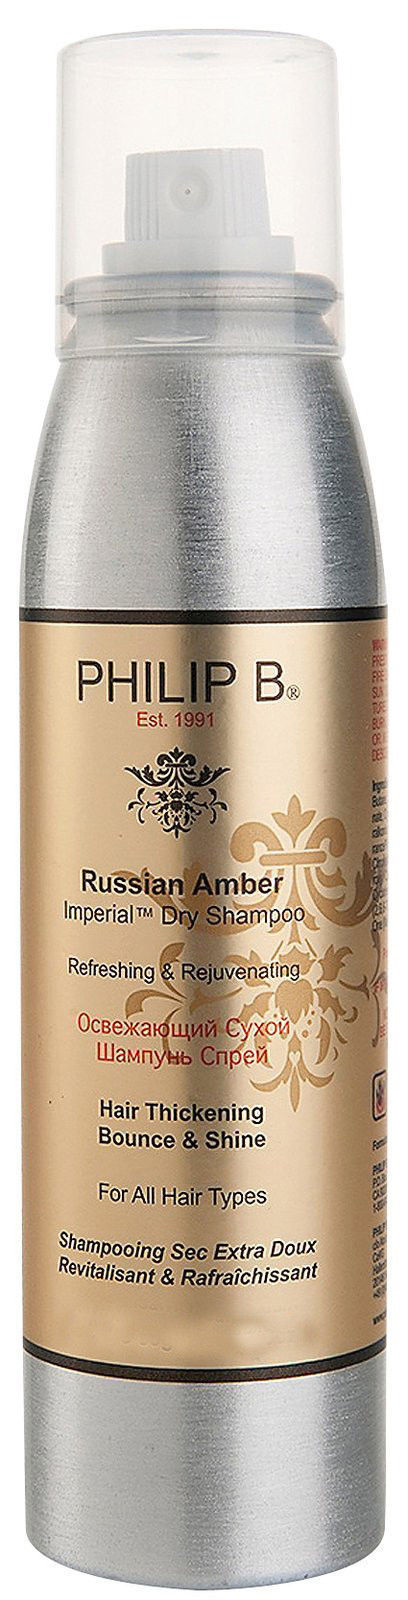 Philip B Russian Amber dry shampoo 3oz (88ml)